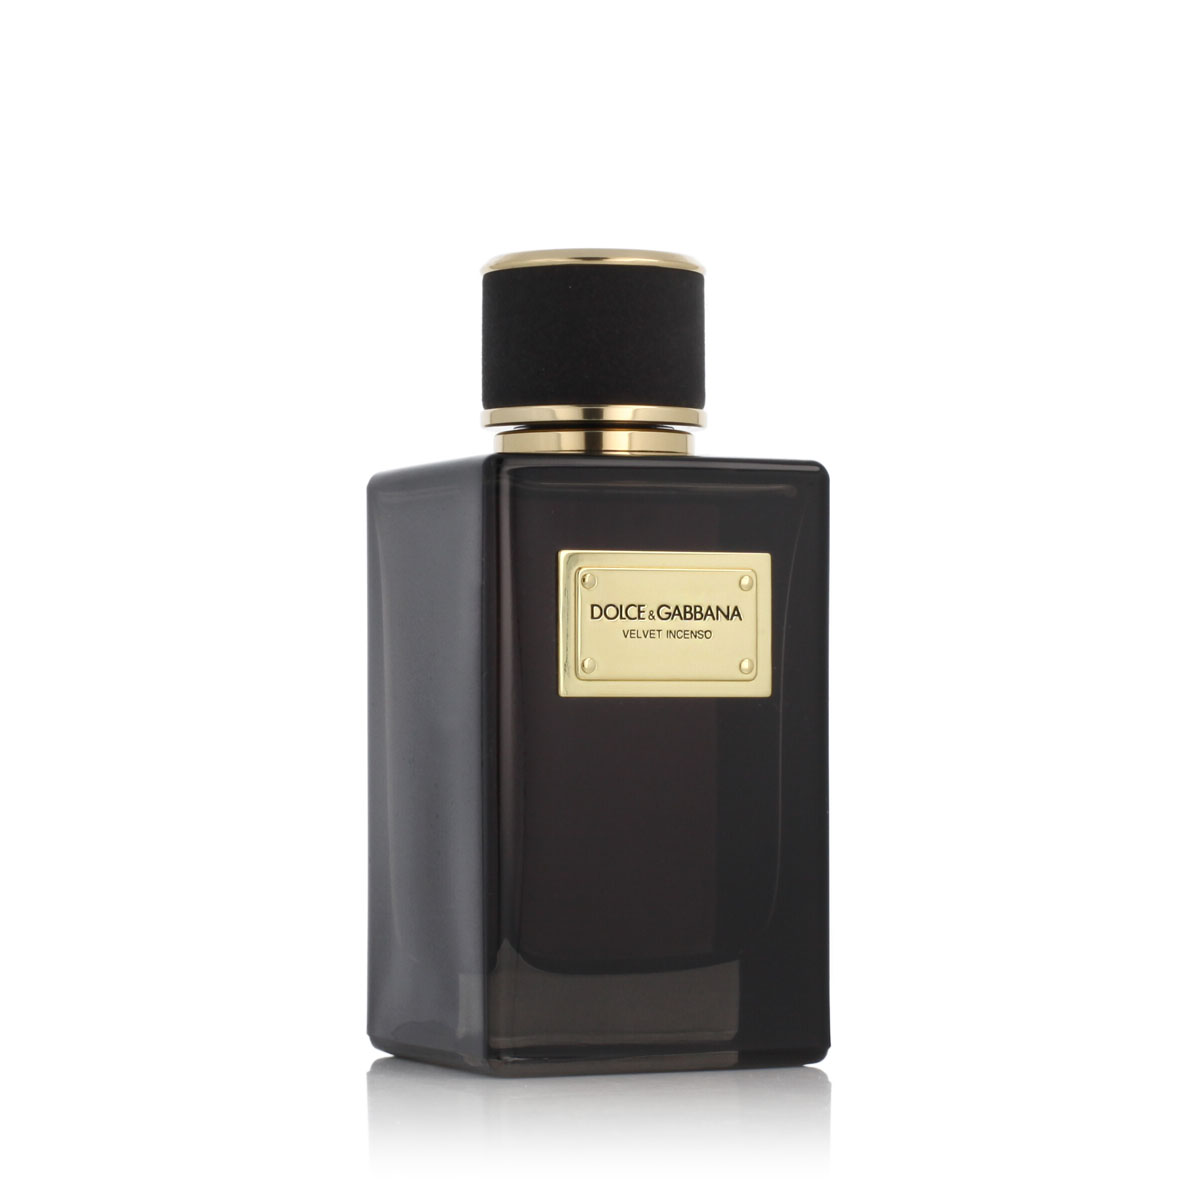 Dolce & Gabbana Velvet Incenso 20 ml kvepalų mėginukas (atomaizeris) Vyrams EDP